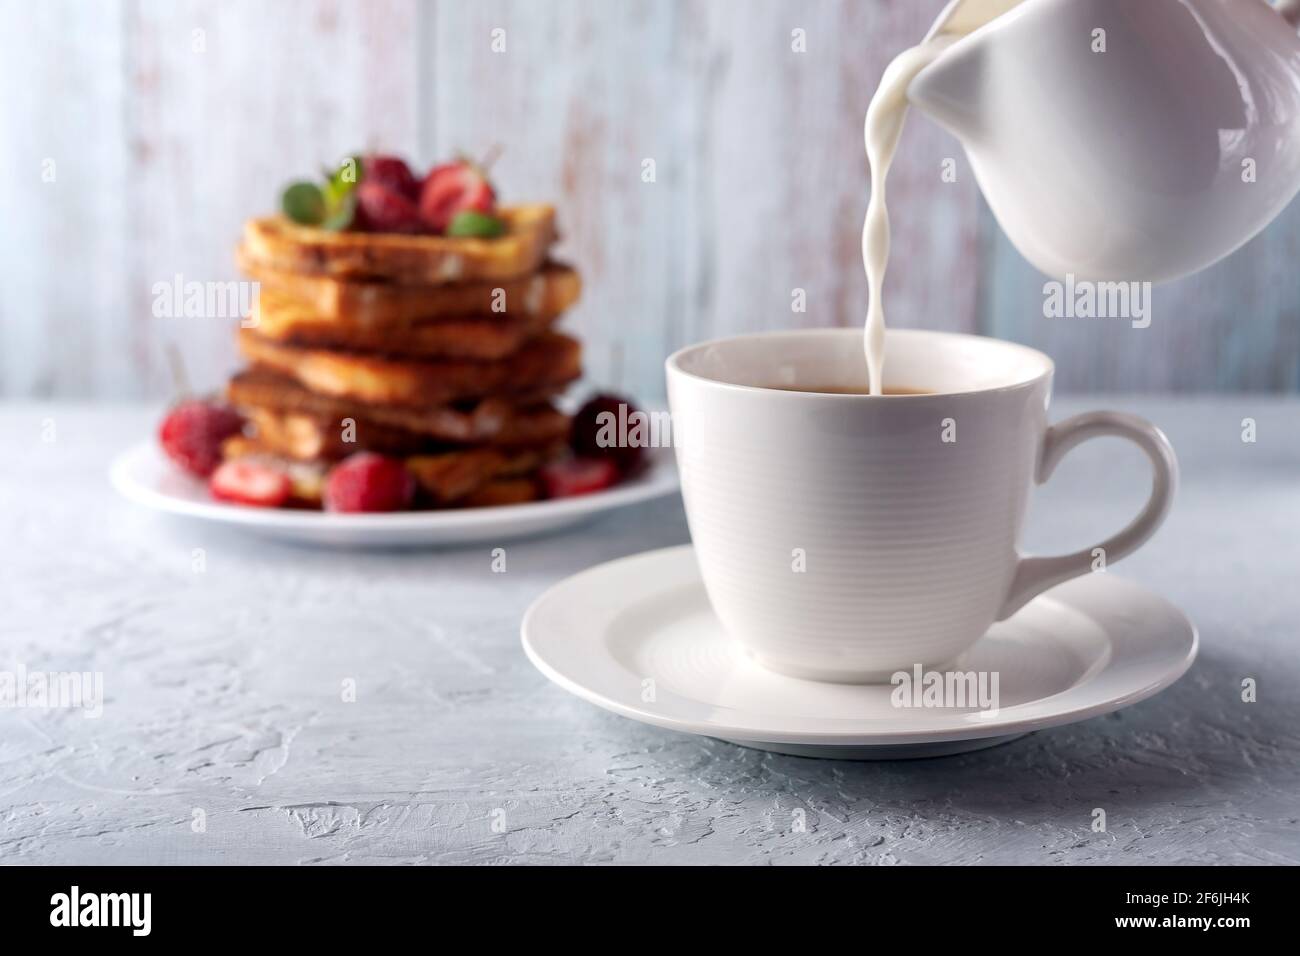 Une tasse de café à la crème et du pain grillé à la cannelle et aux fraises. Petit-déjeuner le matin Banque D'Images